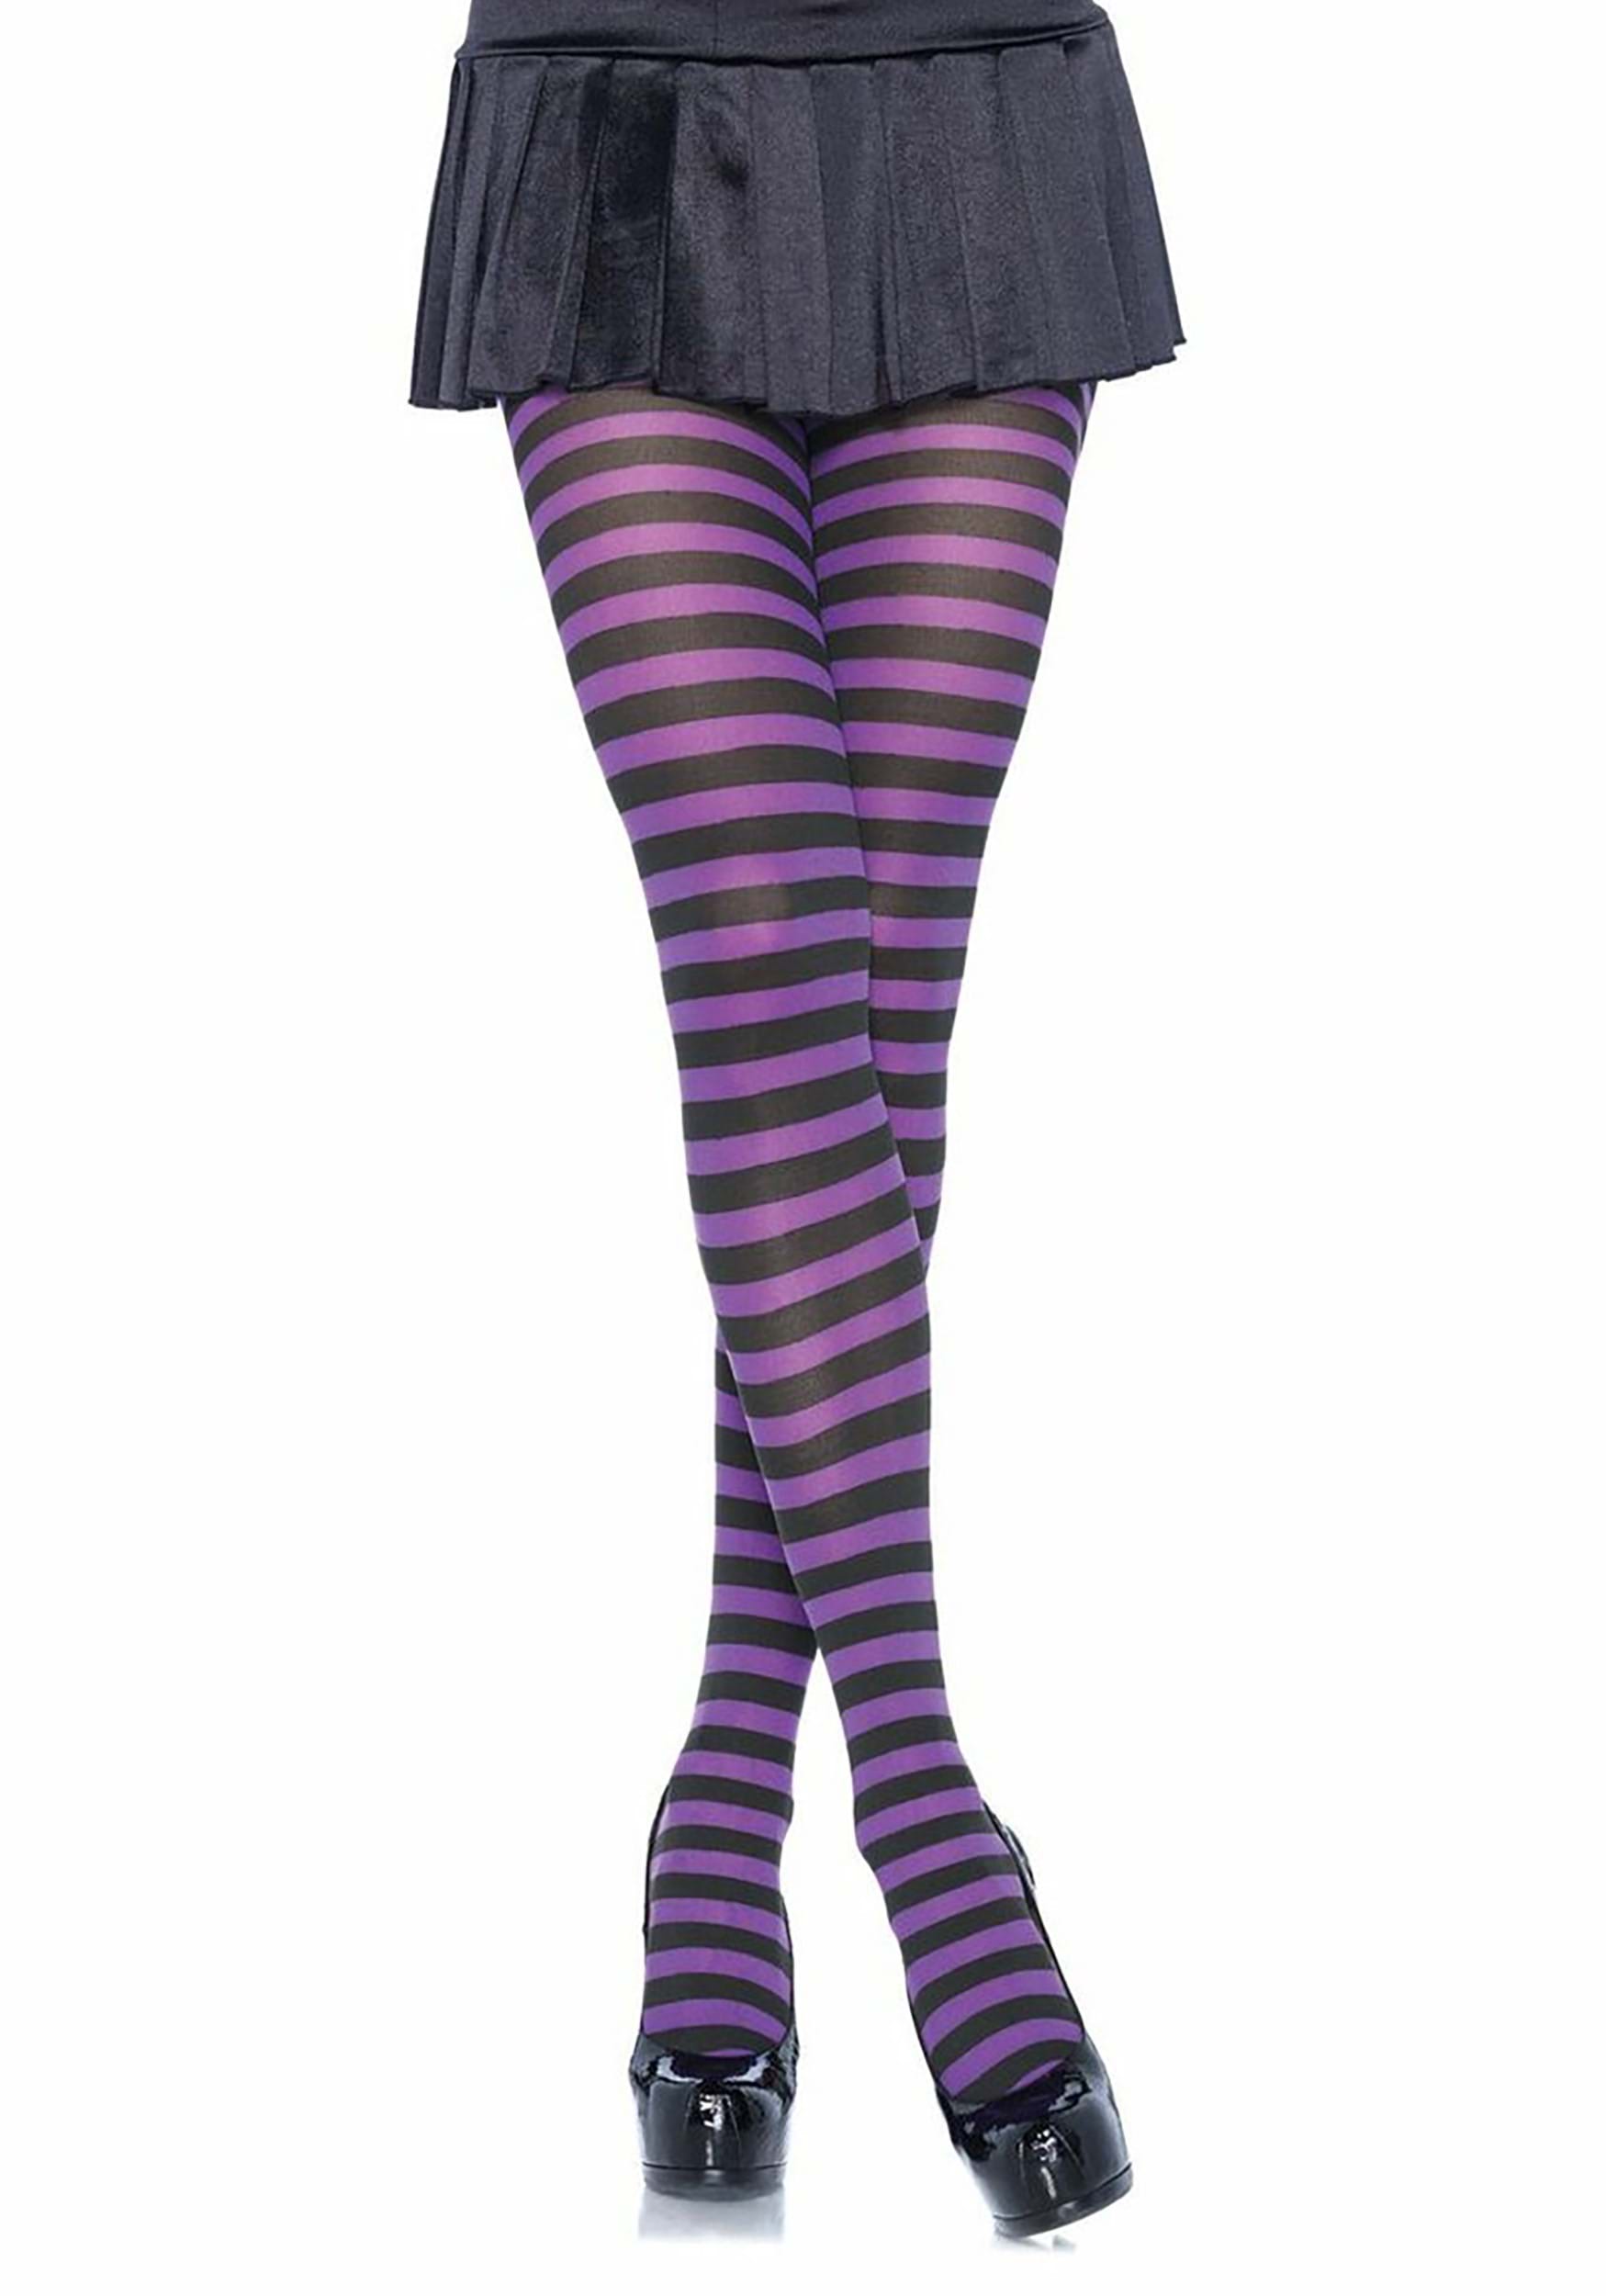 Black and Purple Plus Size Striped Nylon Tights